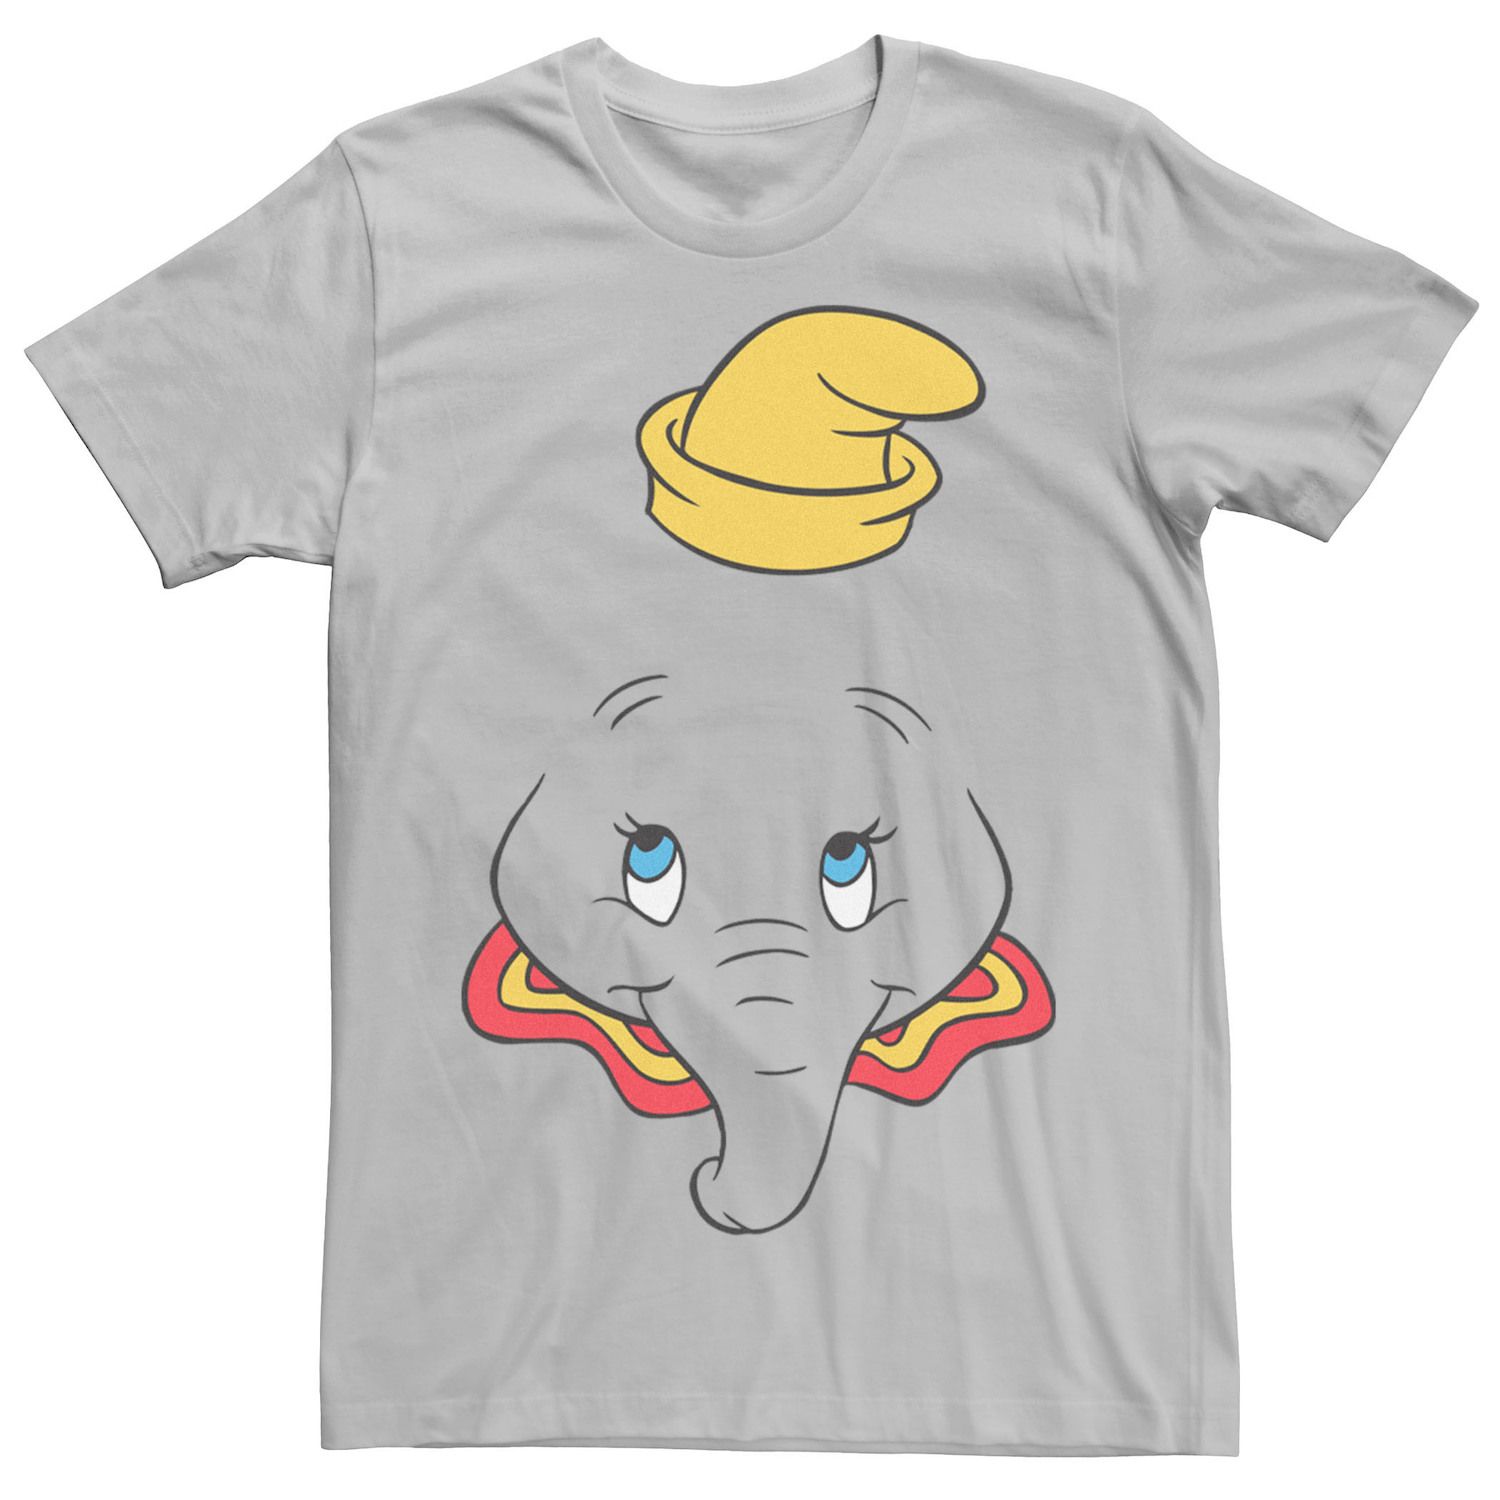 Мужская футболка Dumbo с большим лицом Disney